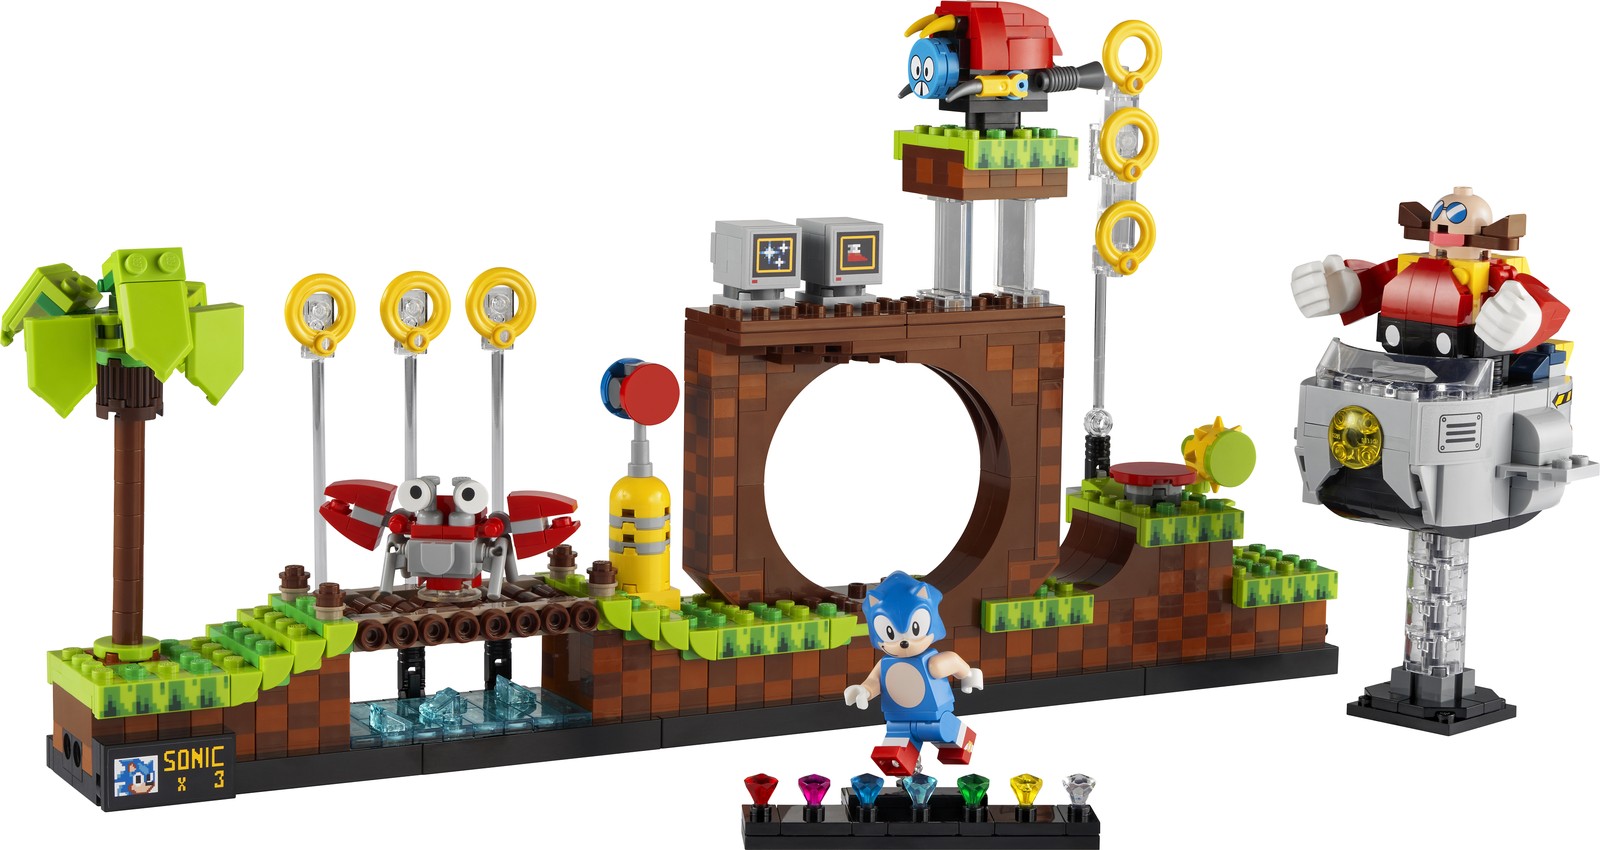 LEGO presenta set oficial de Sonic The Hedgehog, llegará en 2022 1